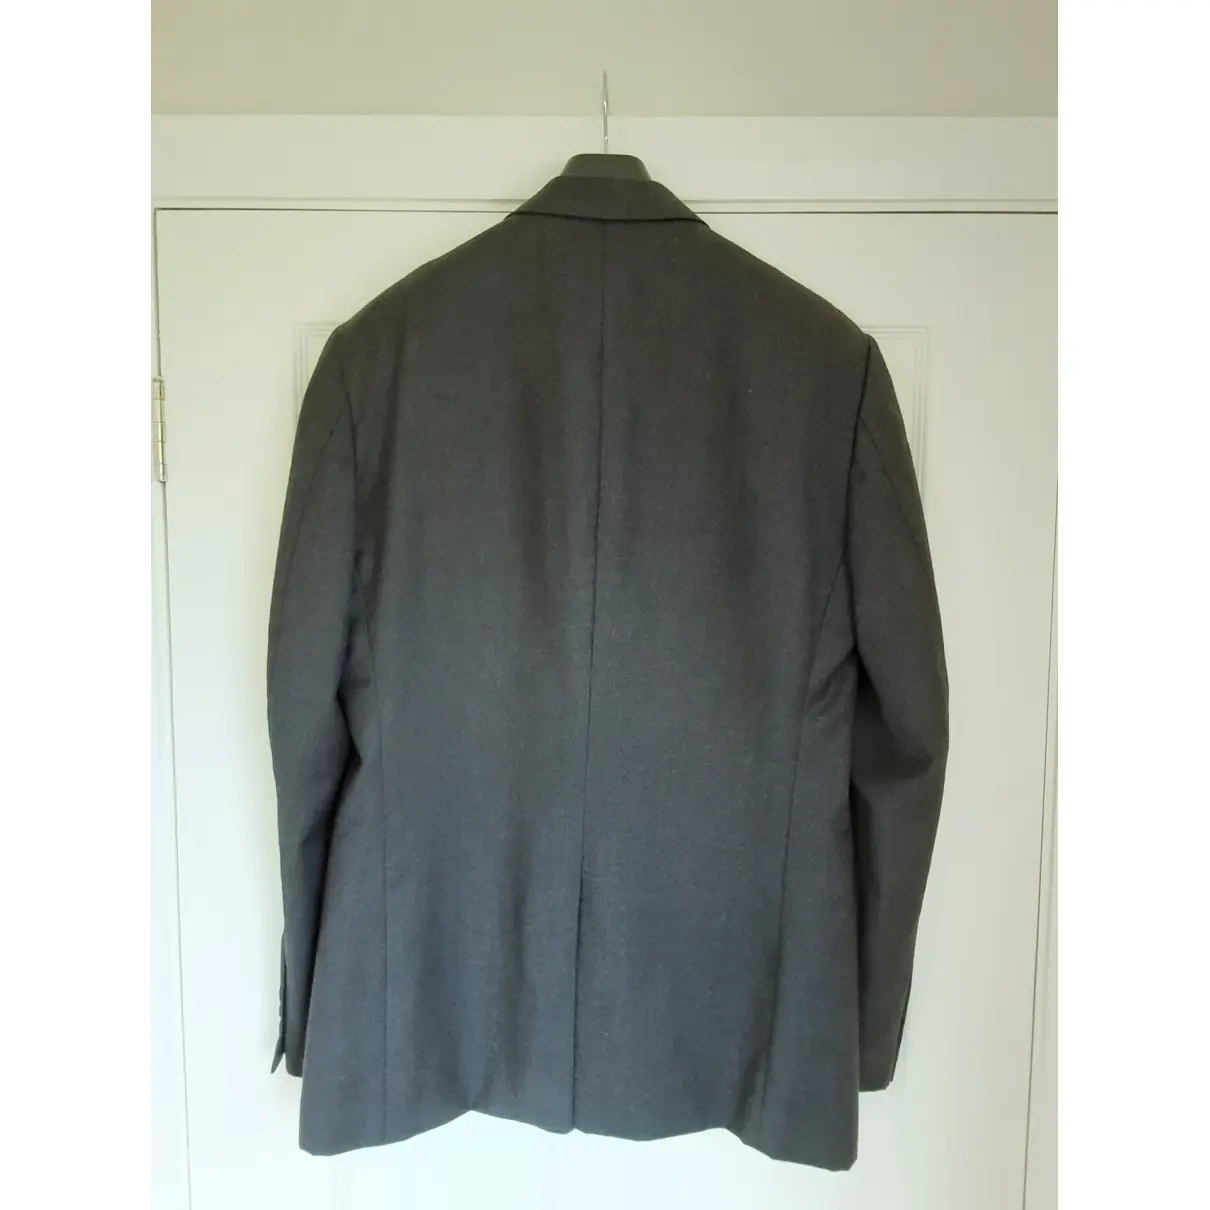 Dries Van Noten Wool vest for sale - Vintage